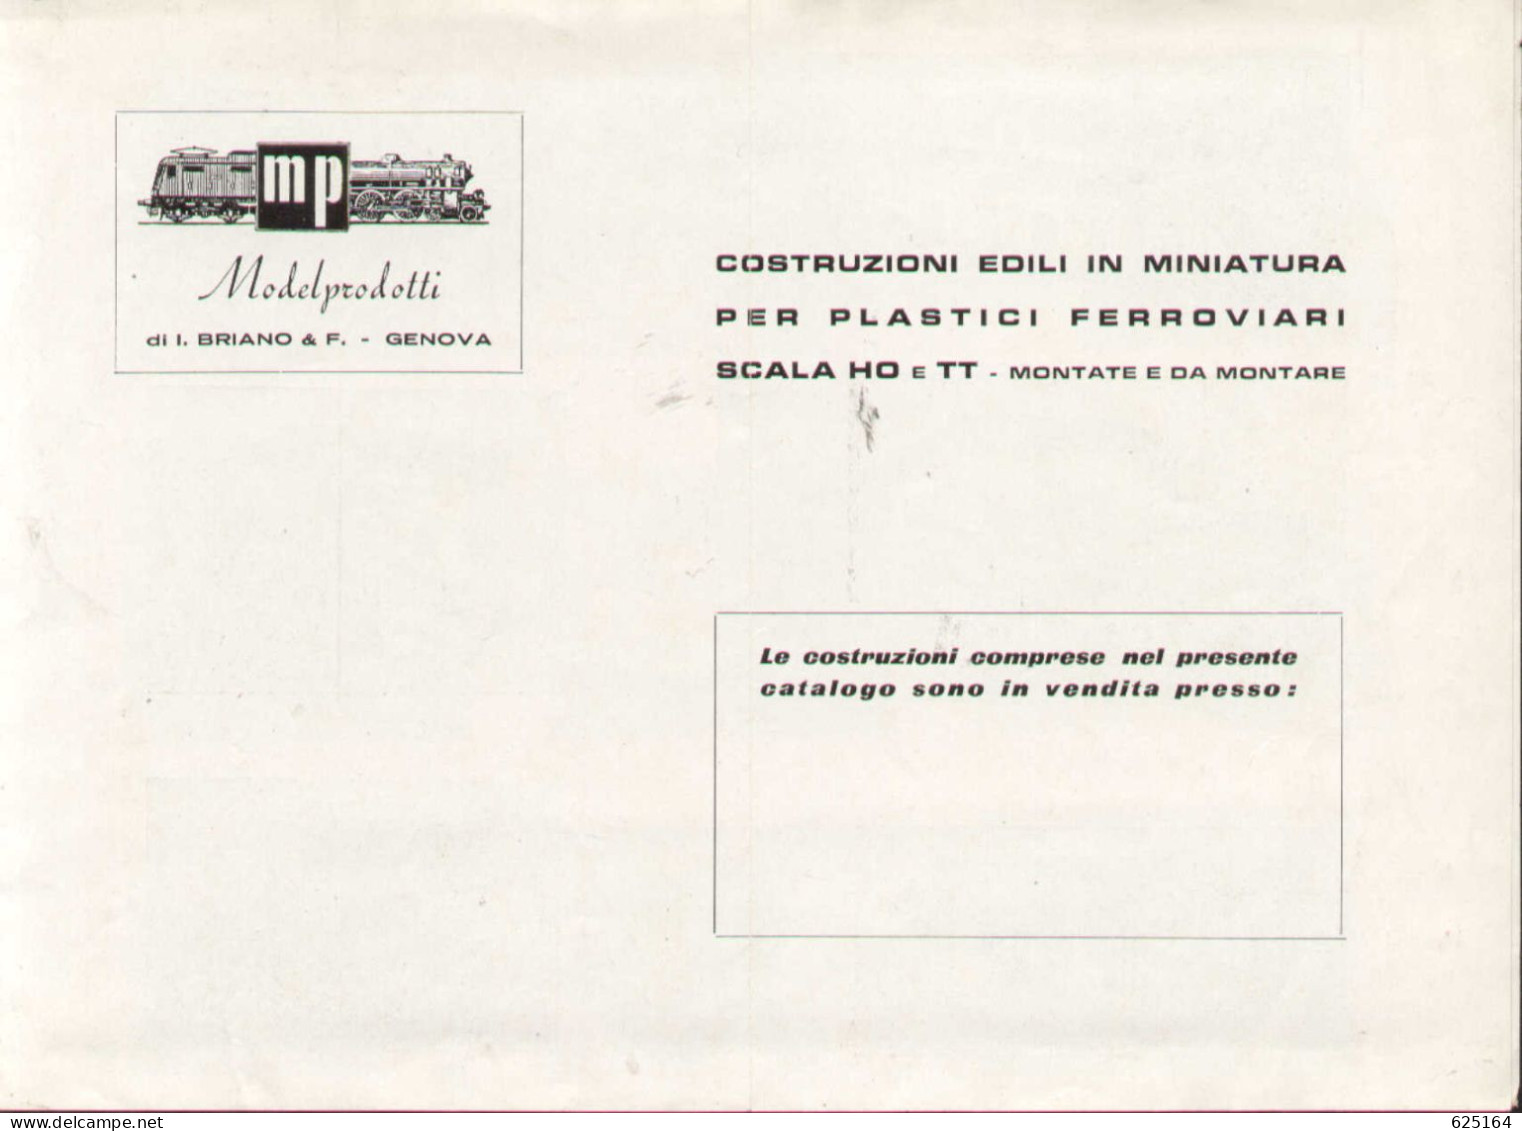 Catalogue MP ModelProdotti 1959? Ed. Italo Briano Genova Accessori HO - En Italien - Ohne Zuordnung